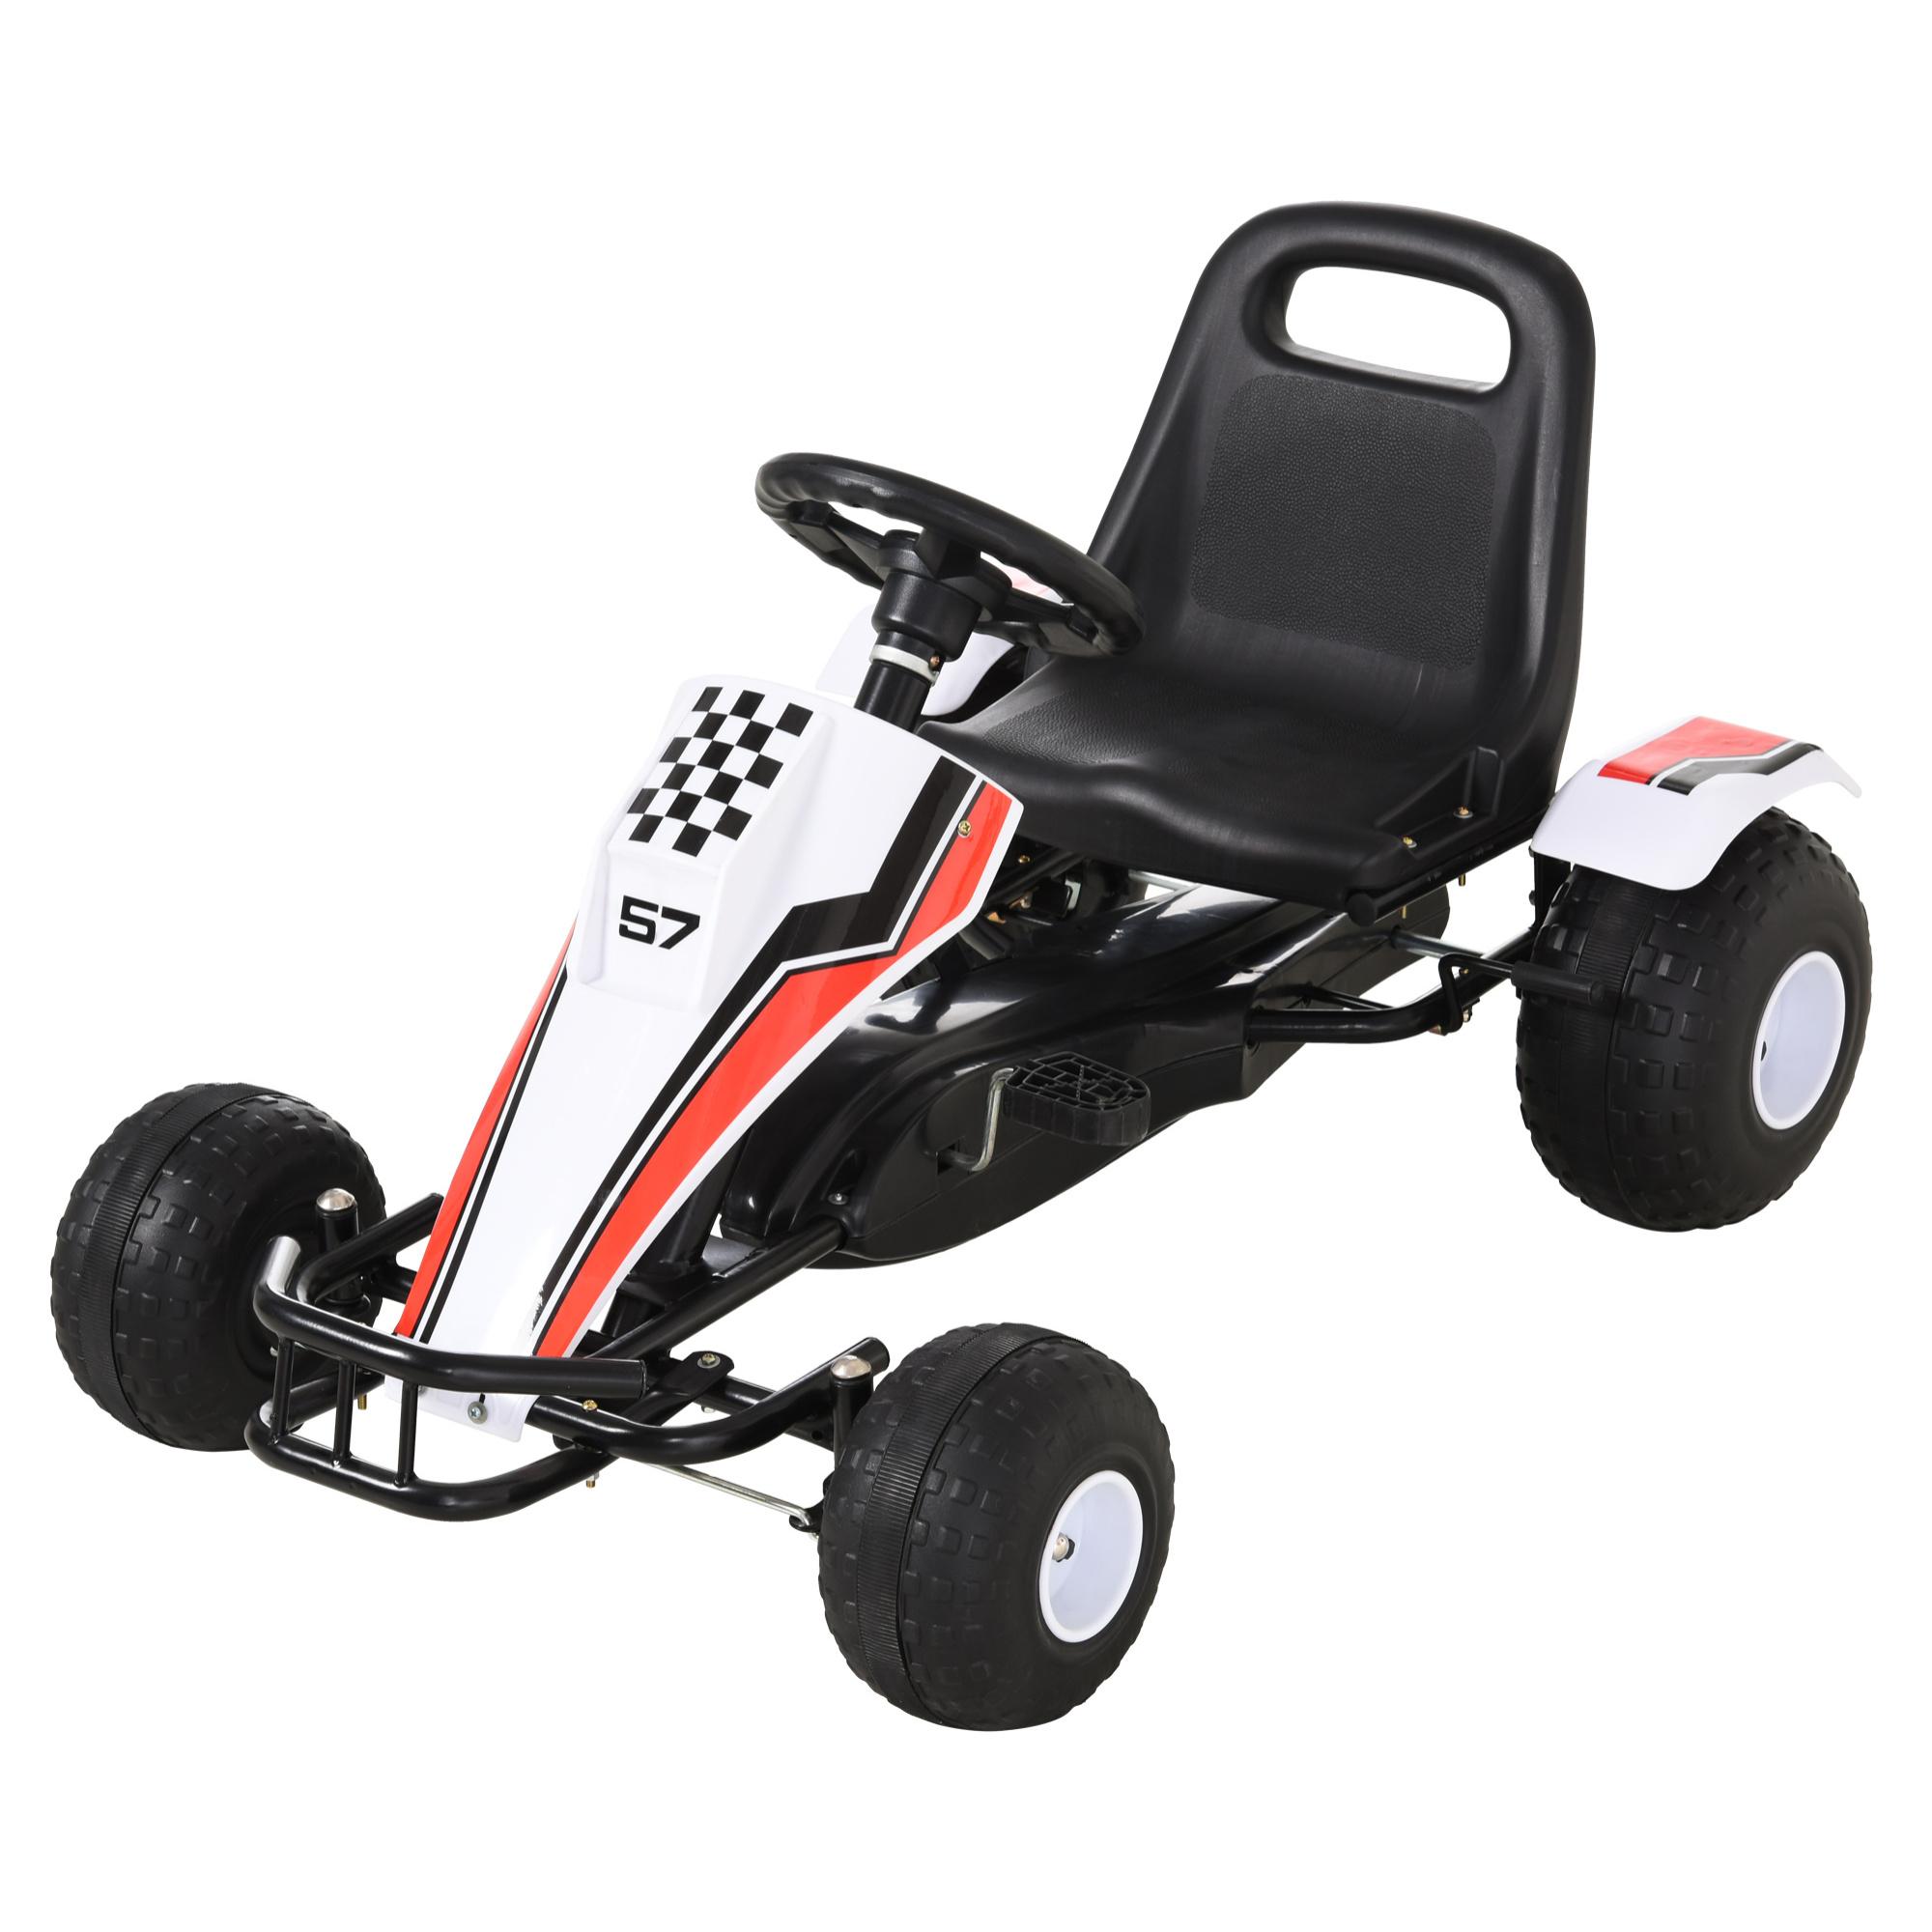 Go Kart a Pedales para Niños de +3 Años Coche de Pedales Infantil con Asiento Ajustable y Freno de Mano 104x66x57 cm Blanco y Negro